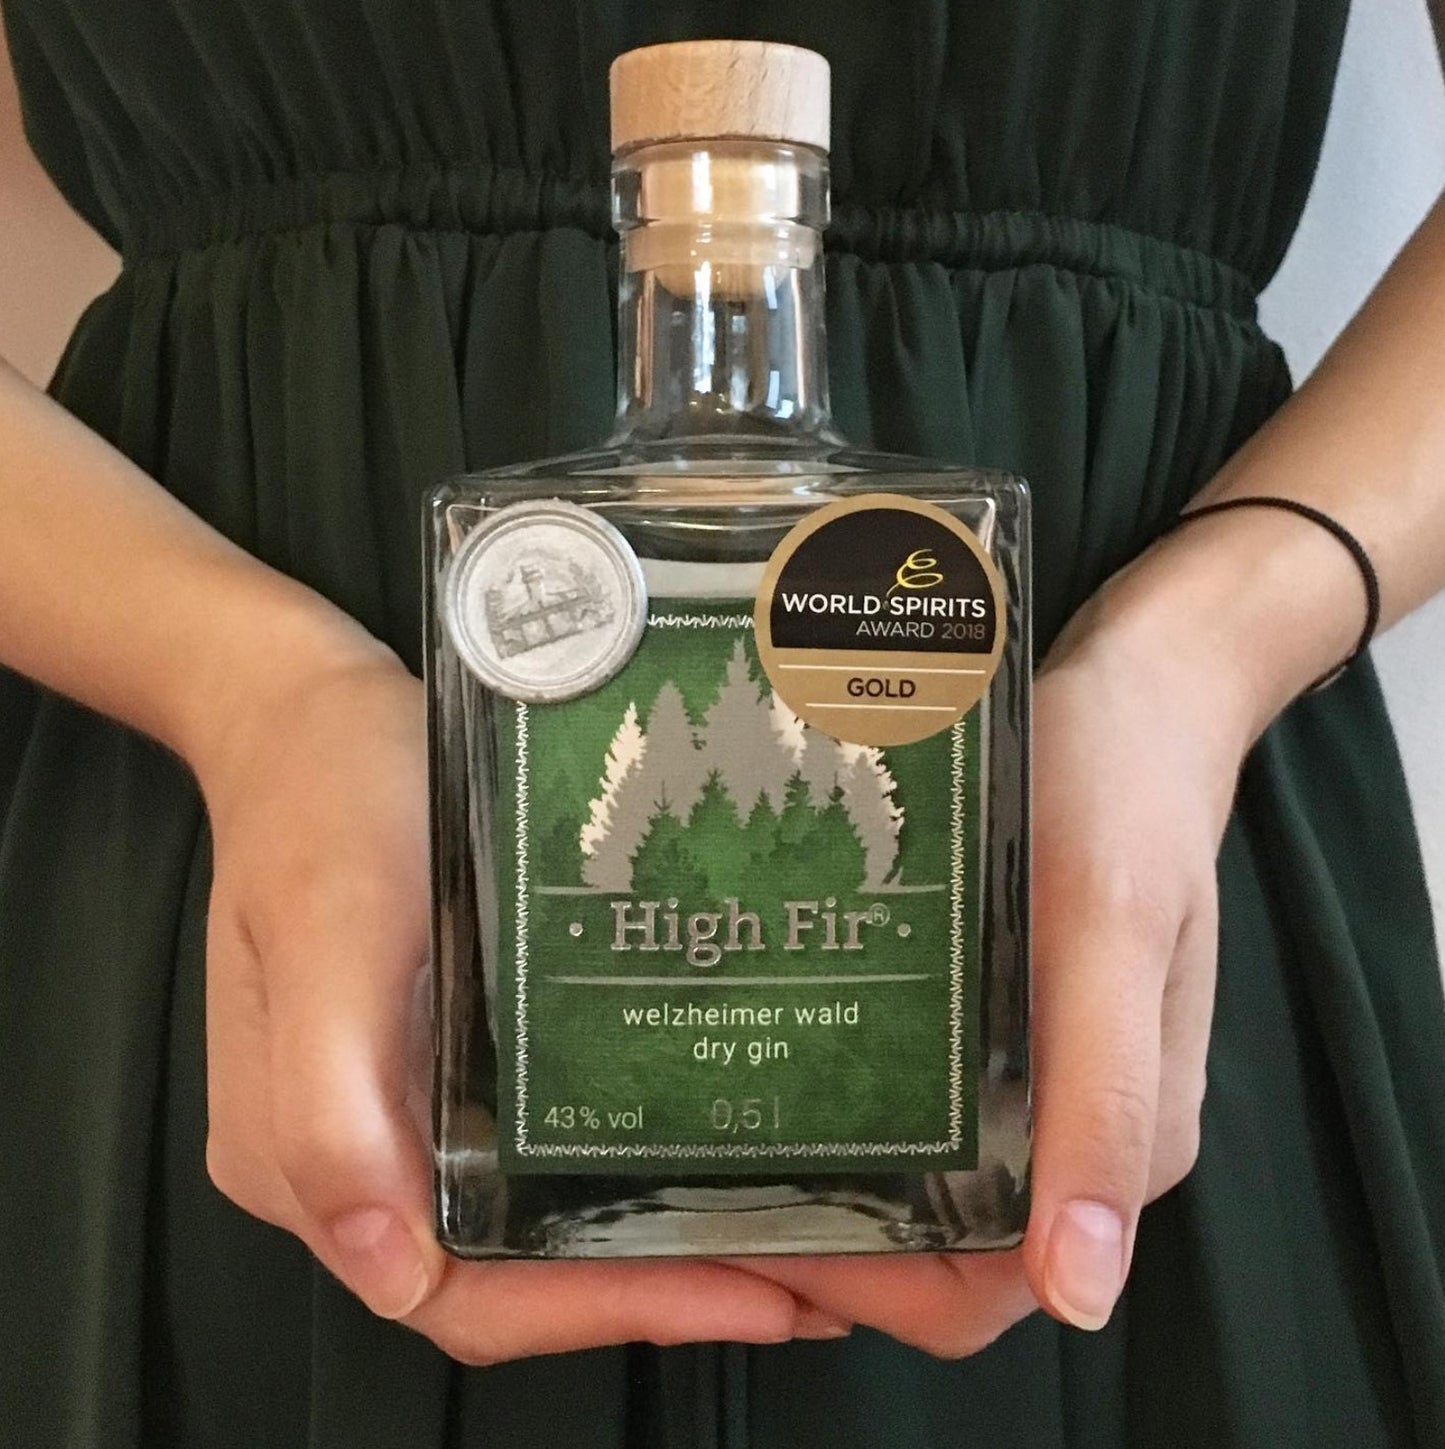 High Fir Dry Gin